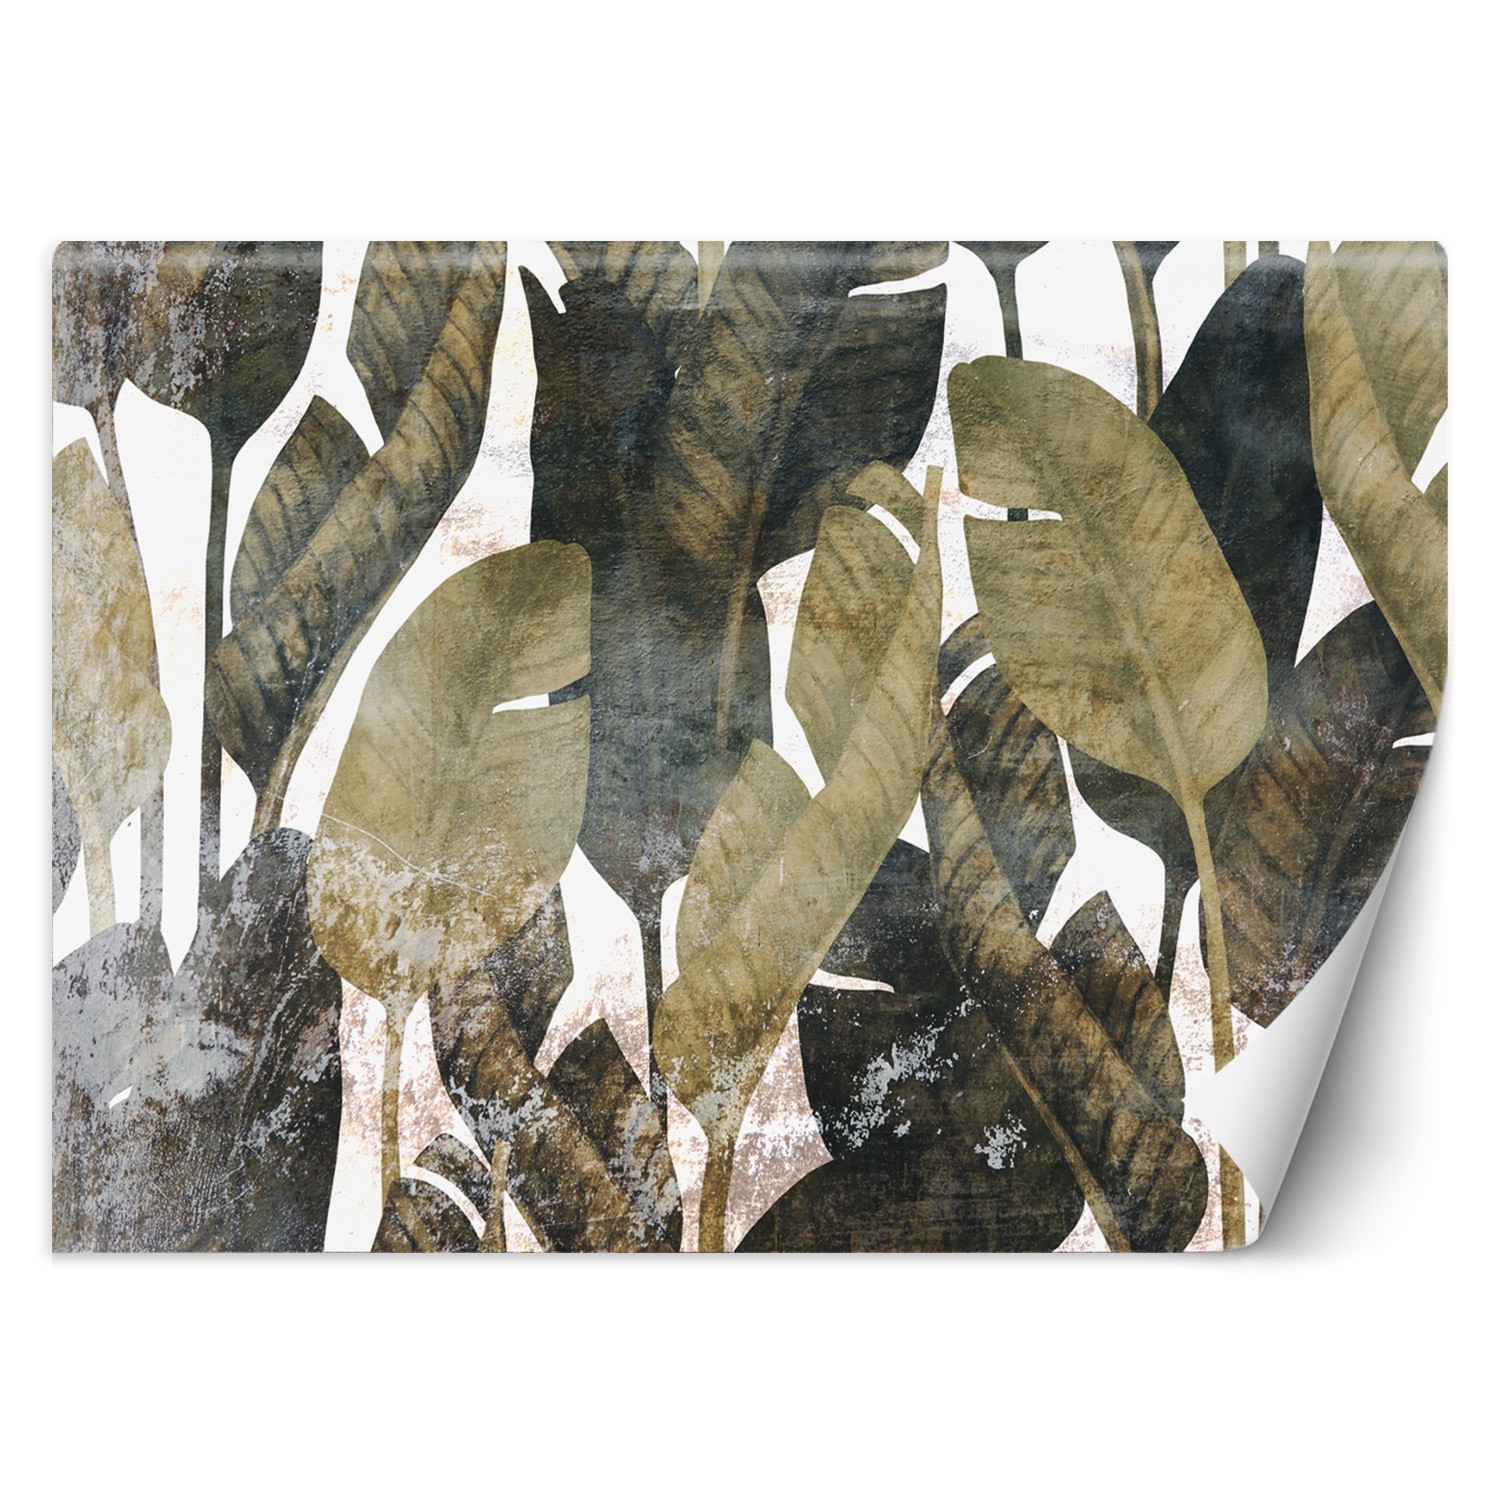 Trend24 – Behang – Bananenblaadjes – Behangpapier – Fotobehang 3D – Behang Woonkamer – 200x140x2 cm – Incl. behanglijm